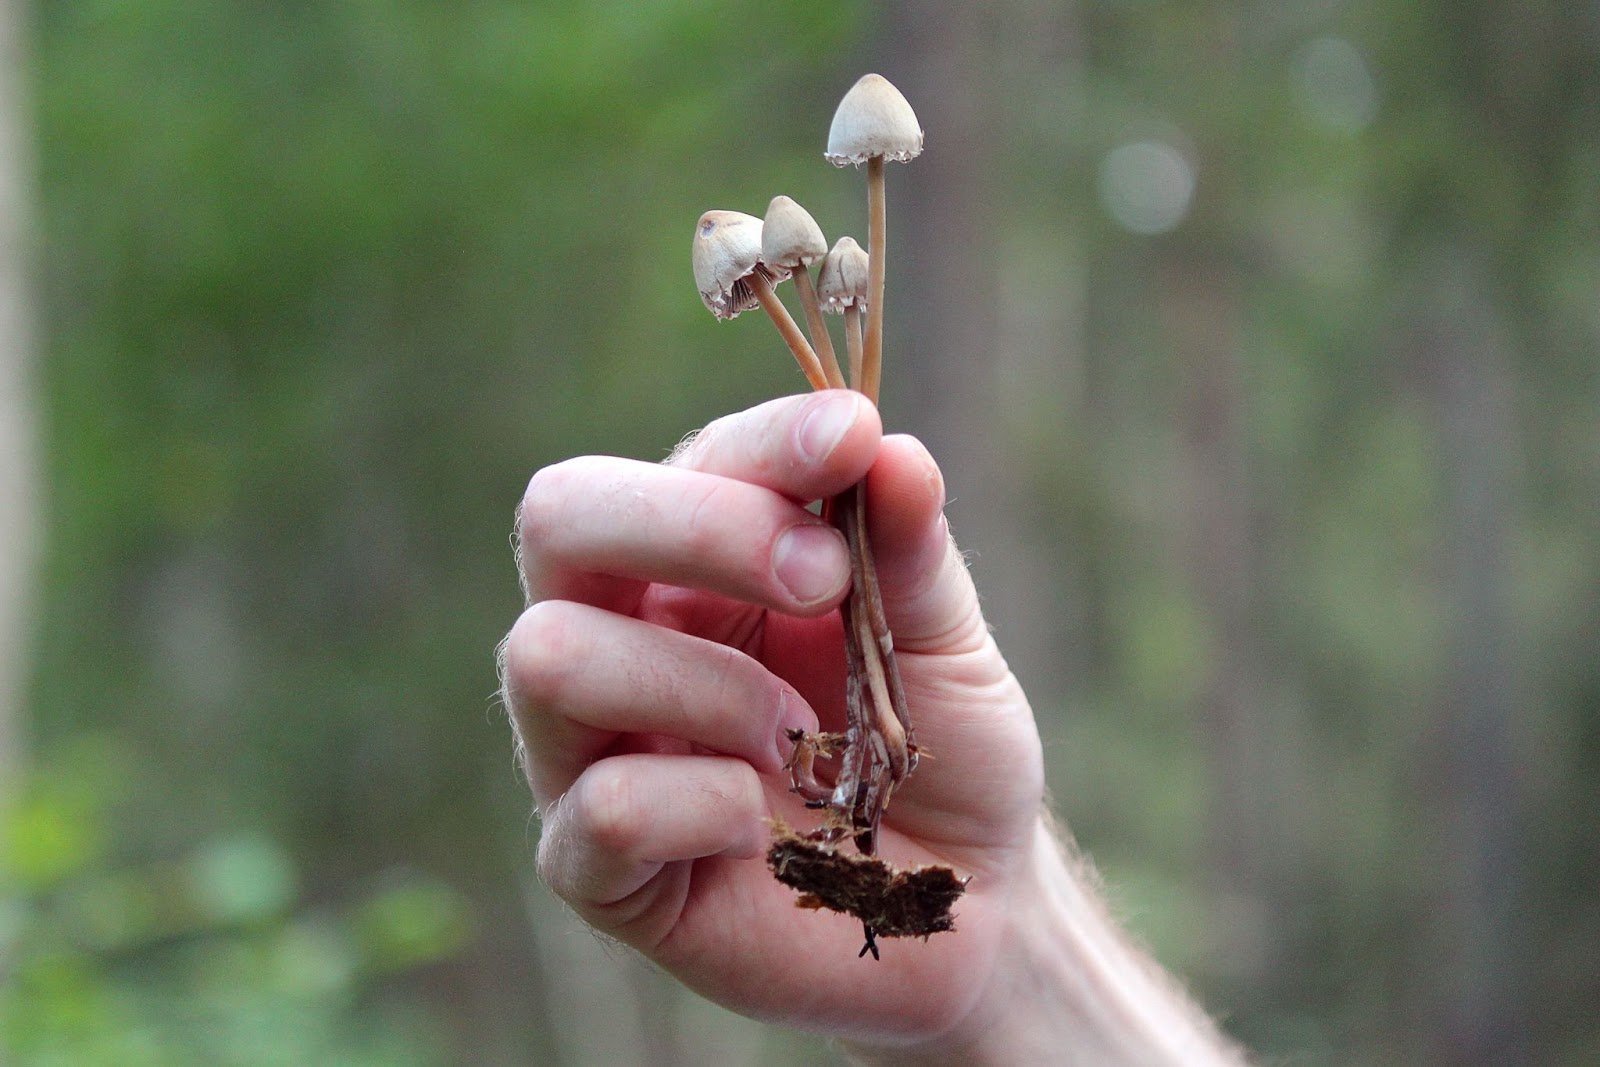 Champignons en Finlande : Le voyage passionnant à la découverte de la forêt  et de la nature 2023